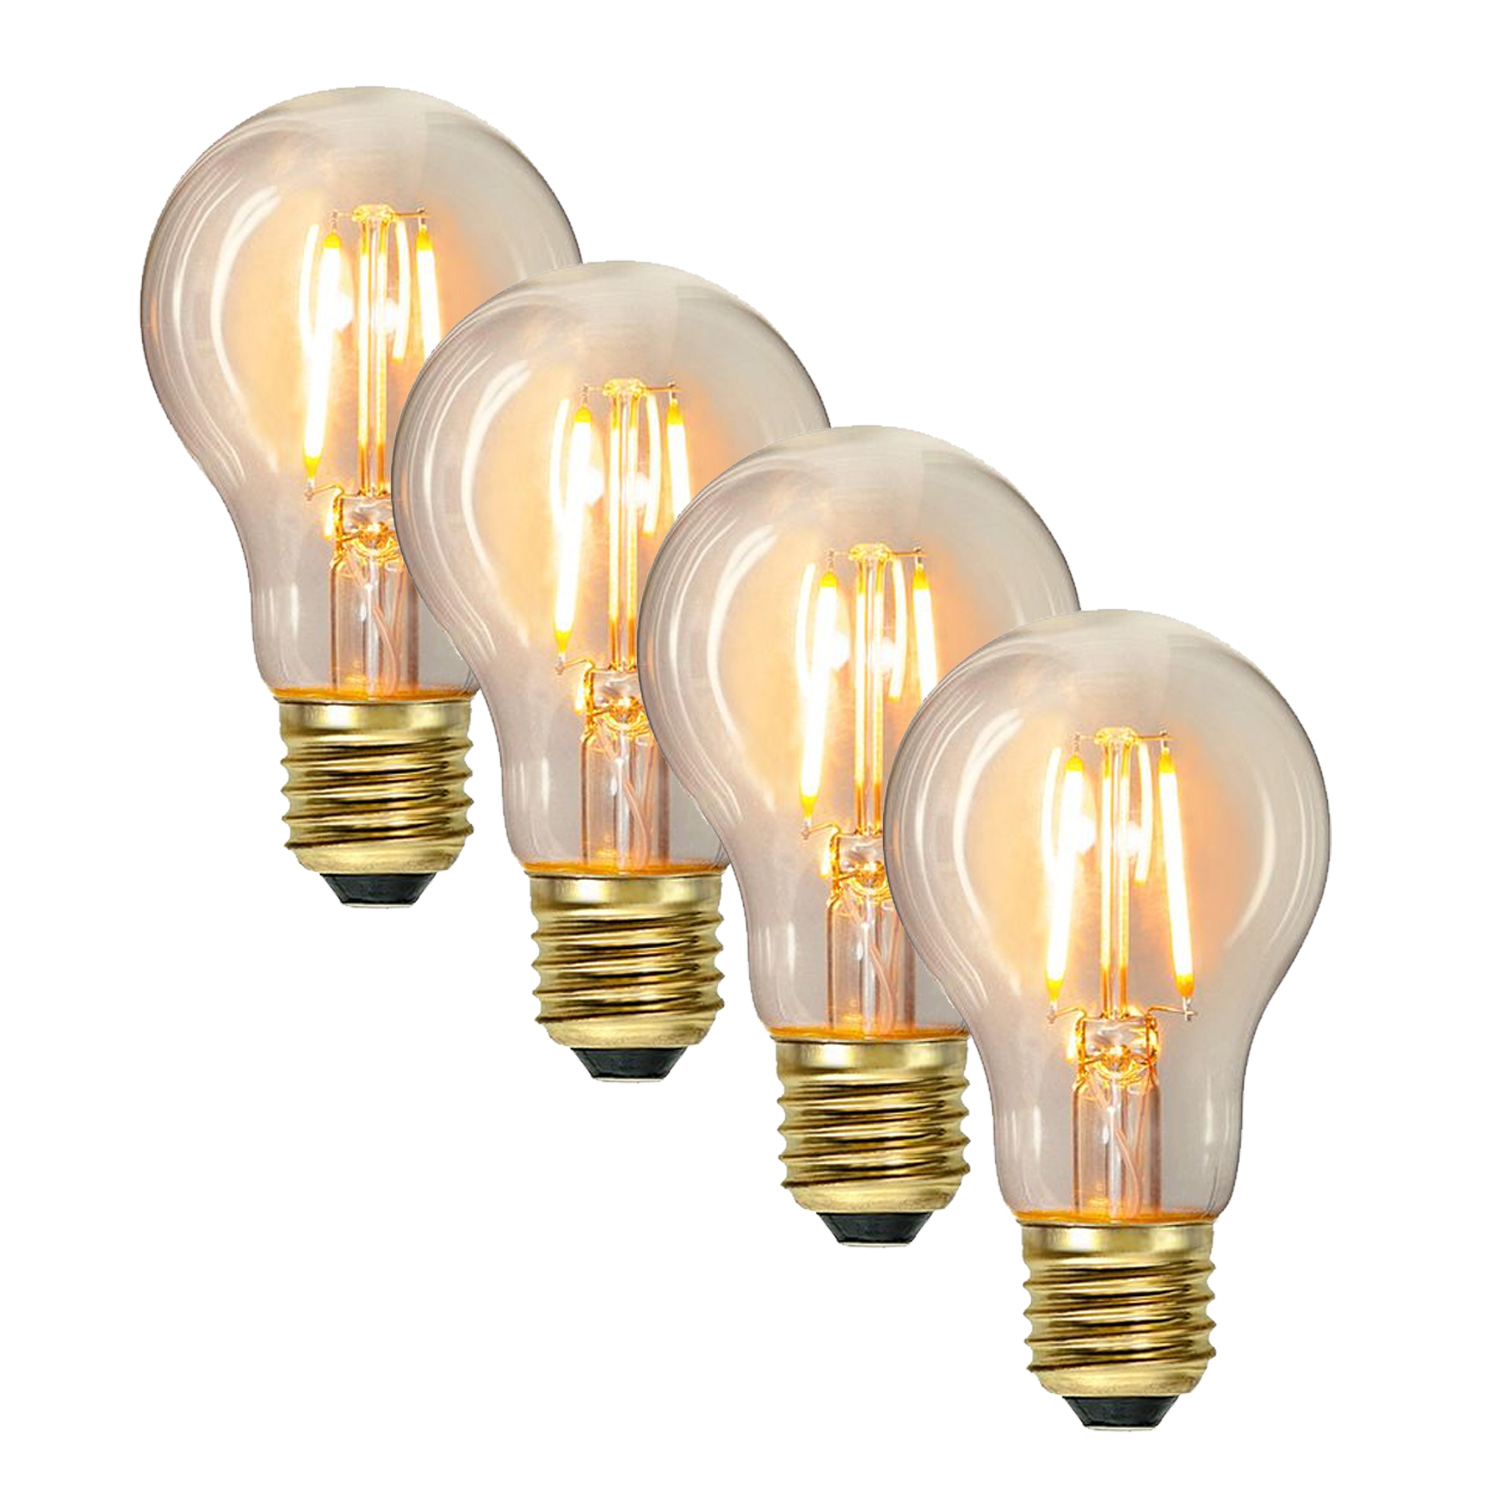 Illu-/Partylichterkette 40m - Außenlichterkette weiß - Made in Germany- 40 Edison LED Filamentlampen